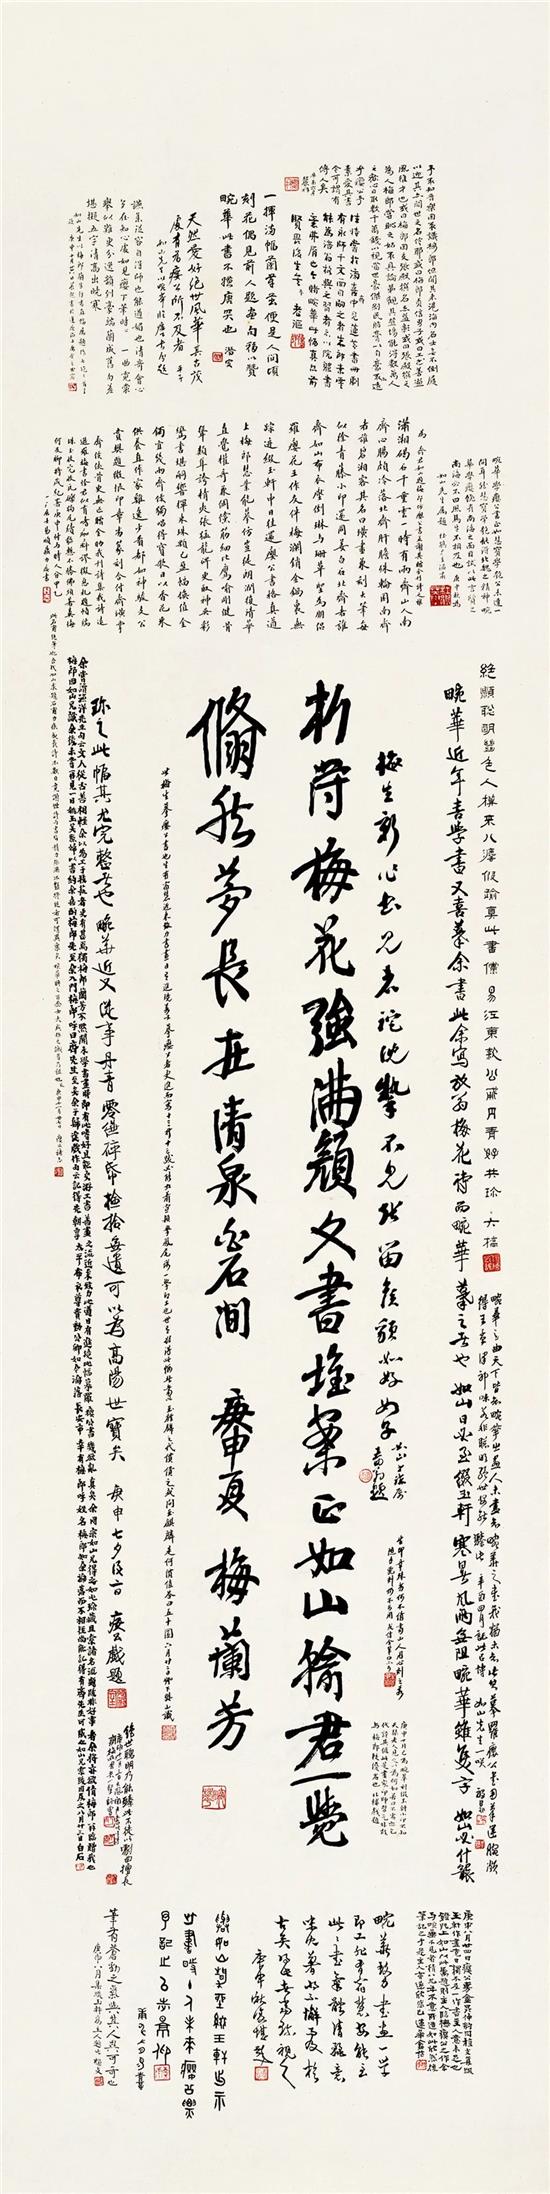 摹罗瘿公行书放翁梅花诗 梅兰芳1920年169.5×43cm 珂罗版印刷品 北京画院藏